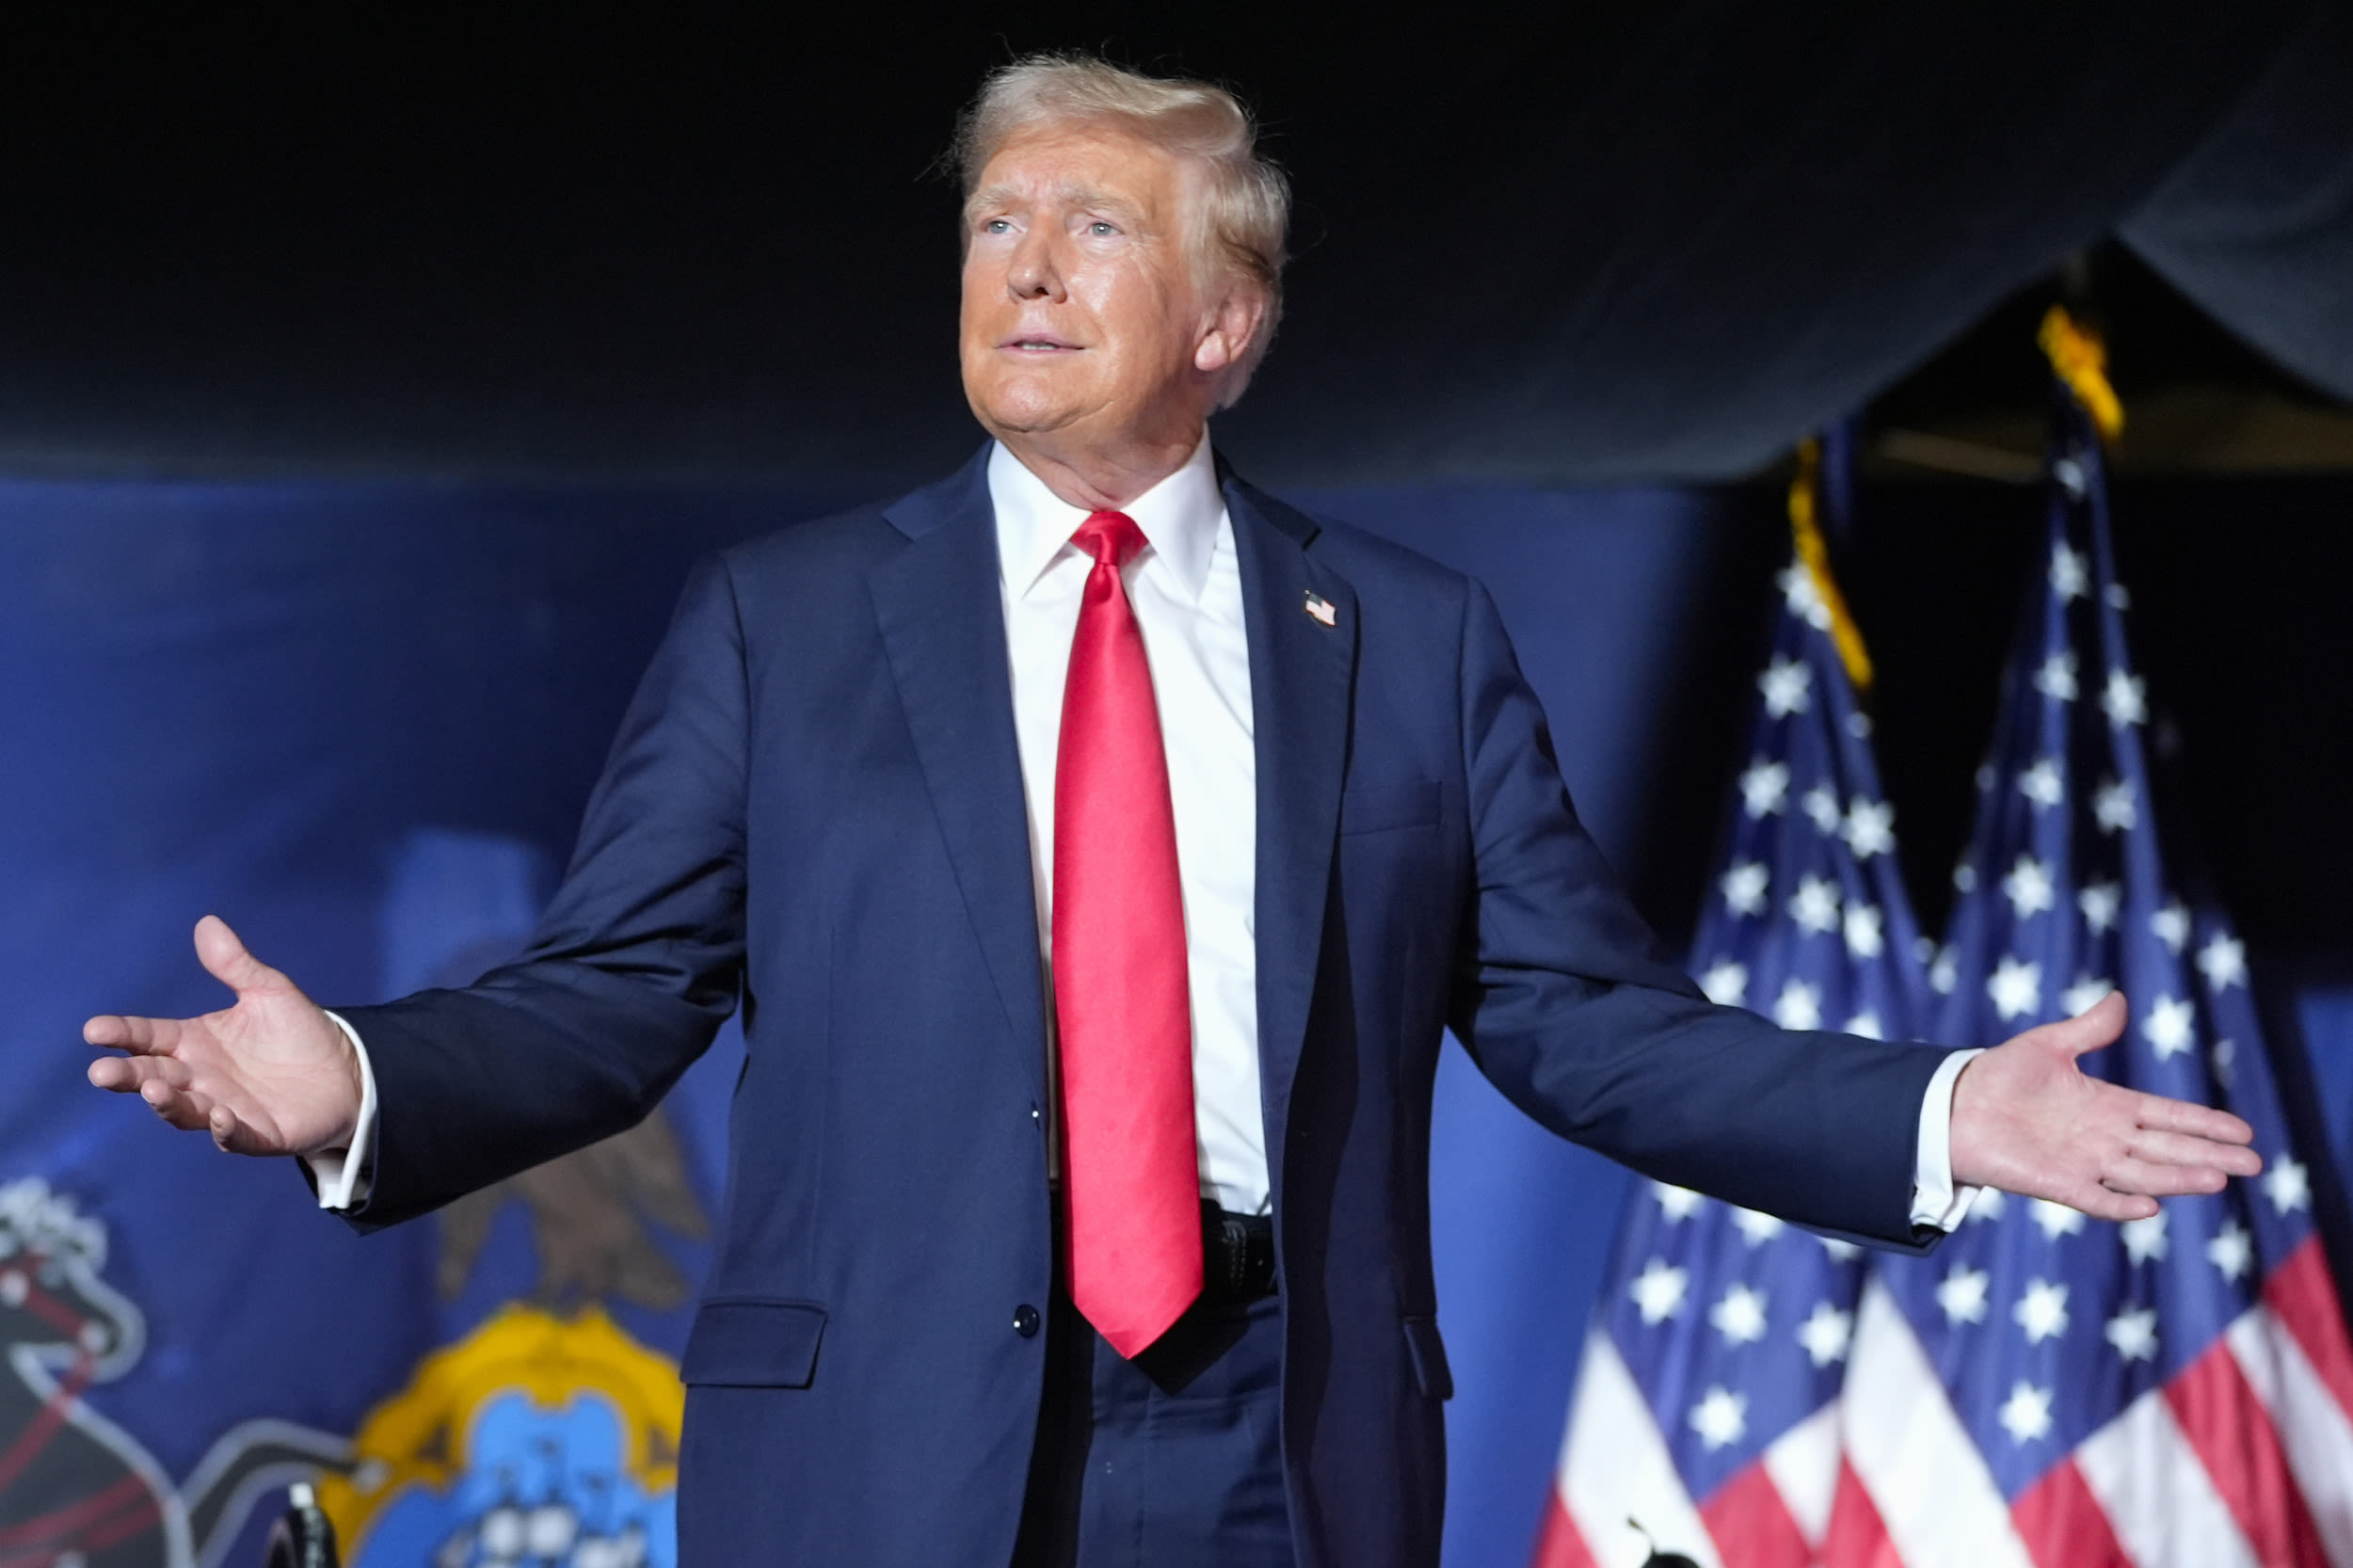 Donald Trump slip up at rally raises eyebrows: "yikes"